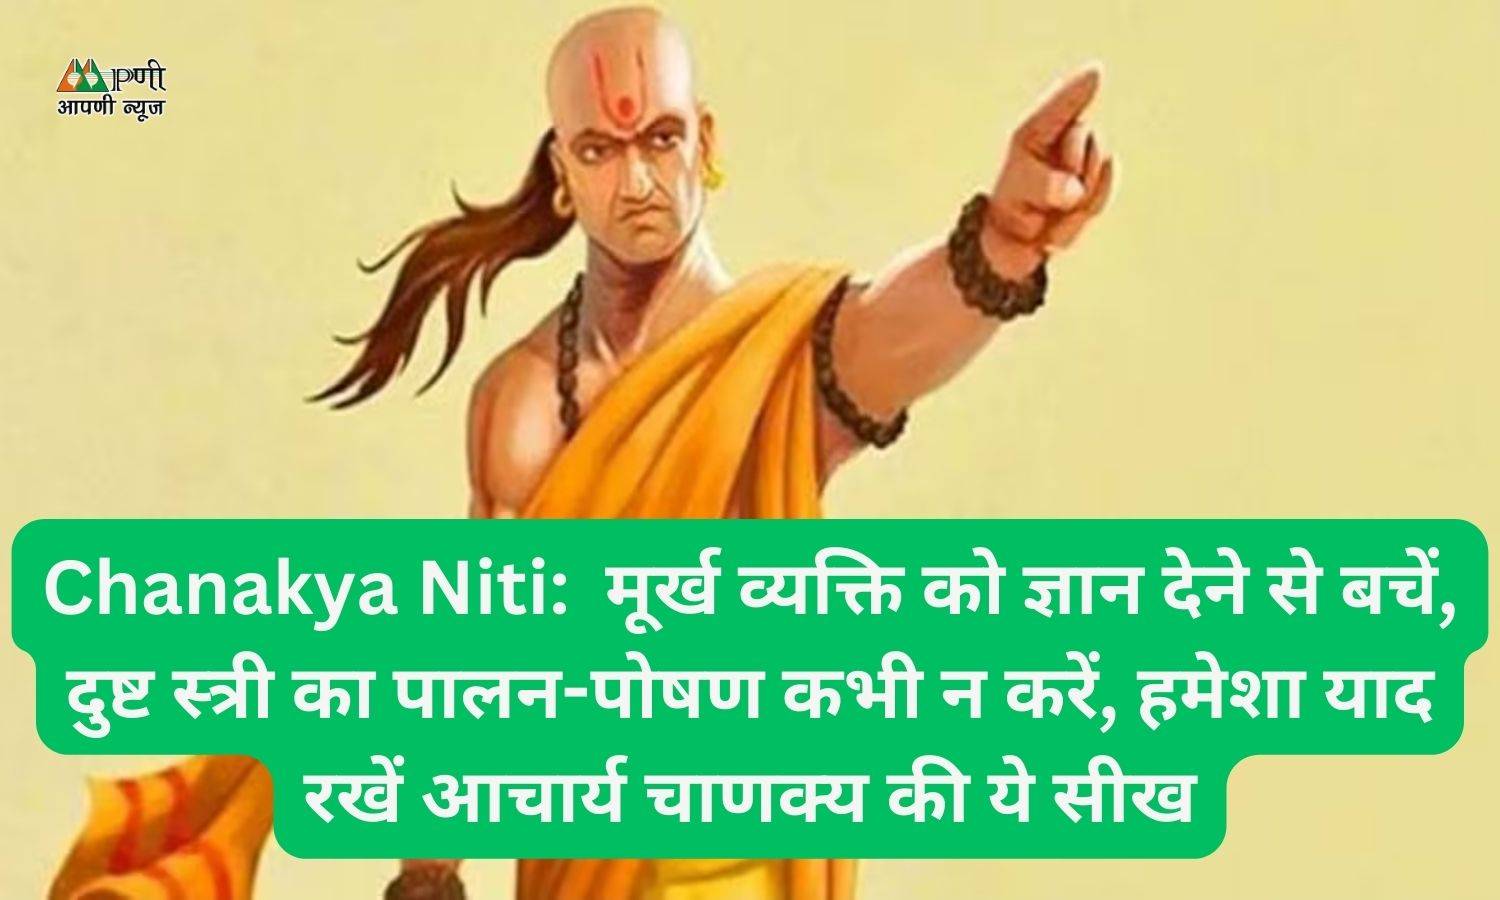 Chanakya Niti:  मूर्ख व्यक्ति को ज्ञान देने से बचें, दुष्ट स्त्री का पालन-पोषण कभी न करें, हमेशा याद रखें आचार्य चाणक्‍य की ये सीख